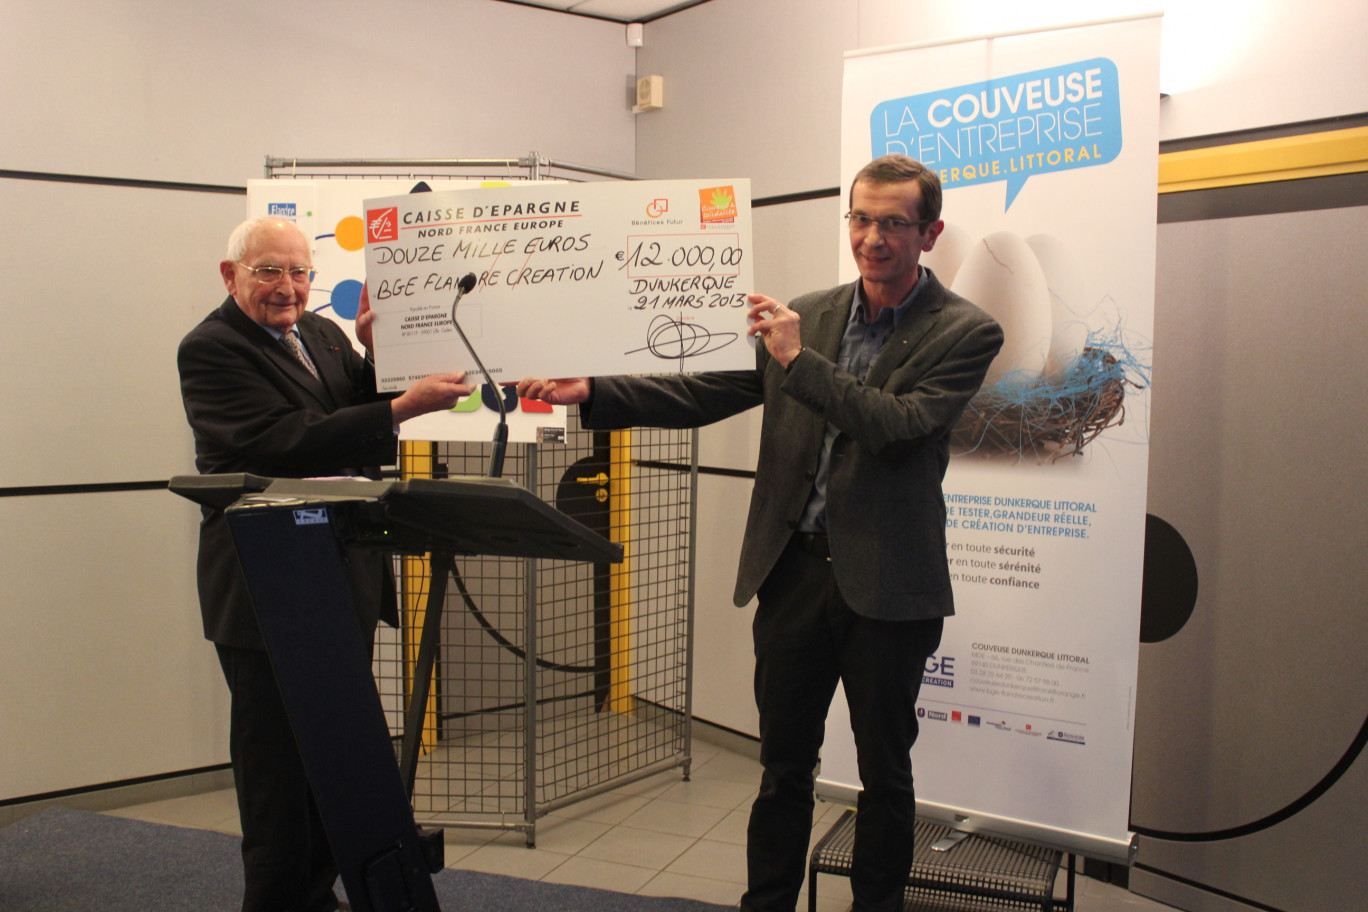 Légende : Remise d’un chèque de 12000€ de la Caisse d’Epargne Nord France Europe pour GBE Flandre Création lors du lancement officiel de la Couveuse Dunkerque Littoral. 